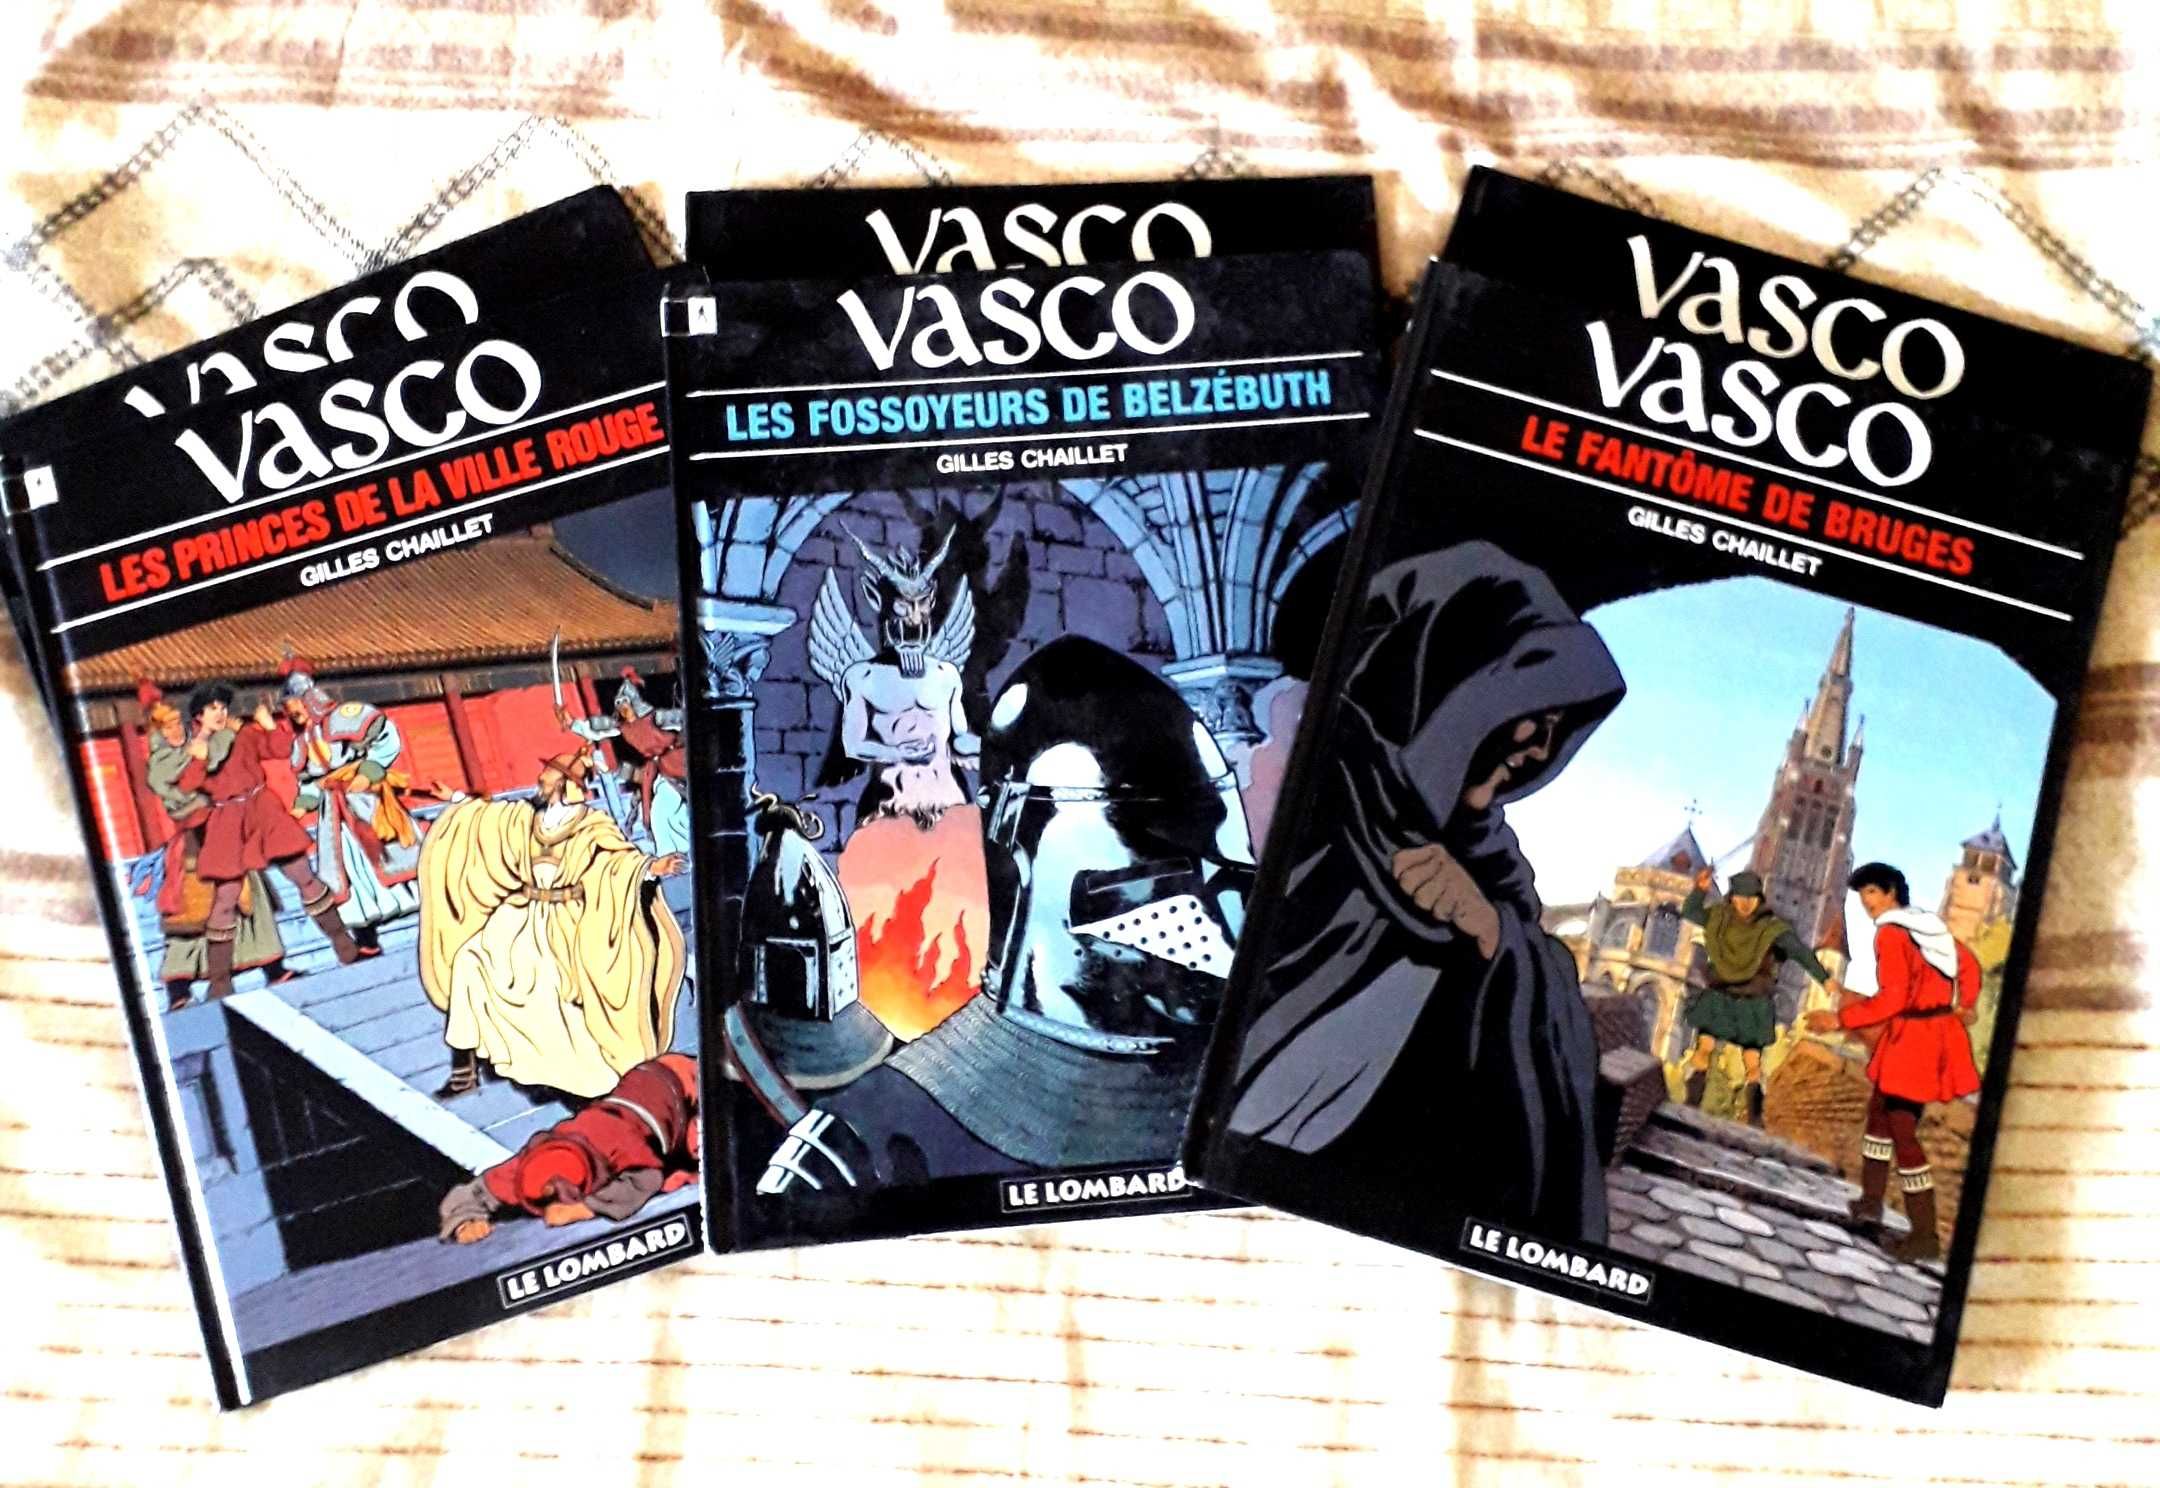 Livros BD - Gilles Chaillet - Série Vasco (FR)